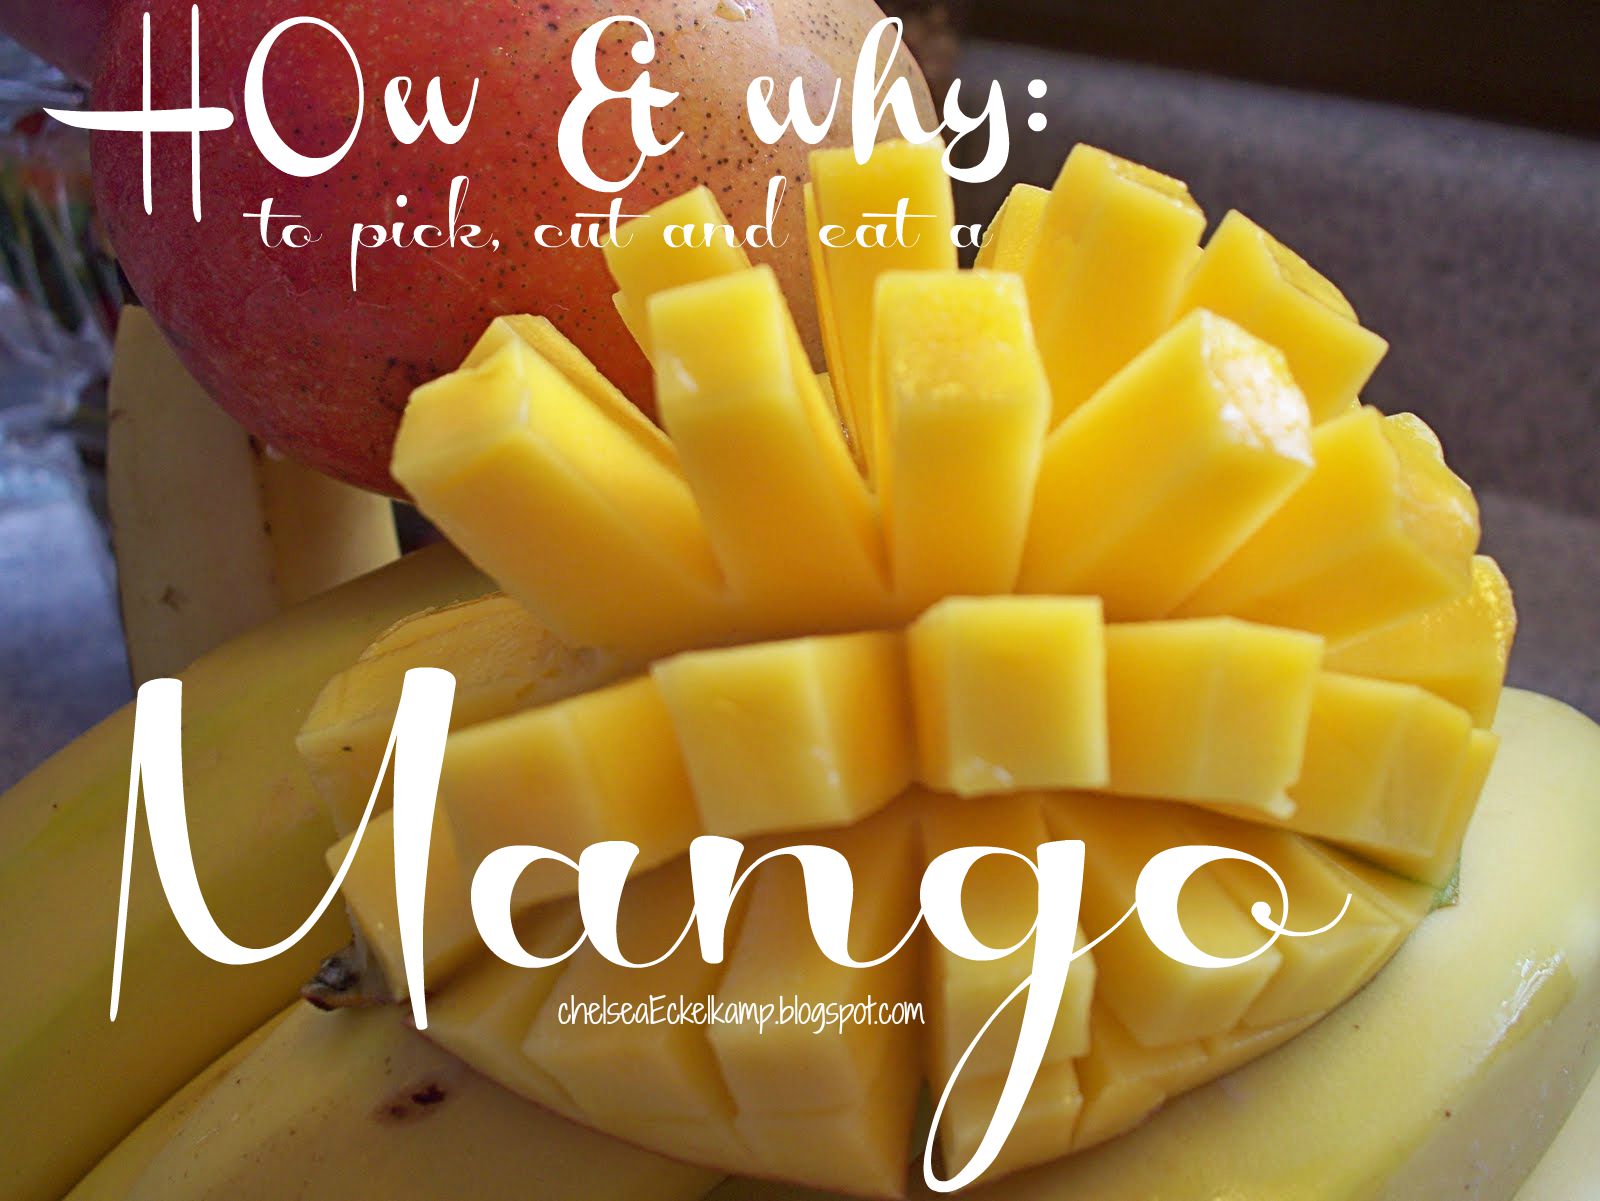 Как правильно разделать манго. Порезать манго. Манго фрукт нарезка. Манго нарезанный. Красиво порезать манго.